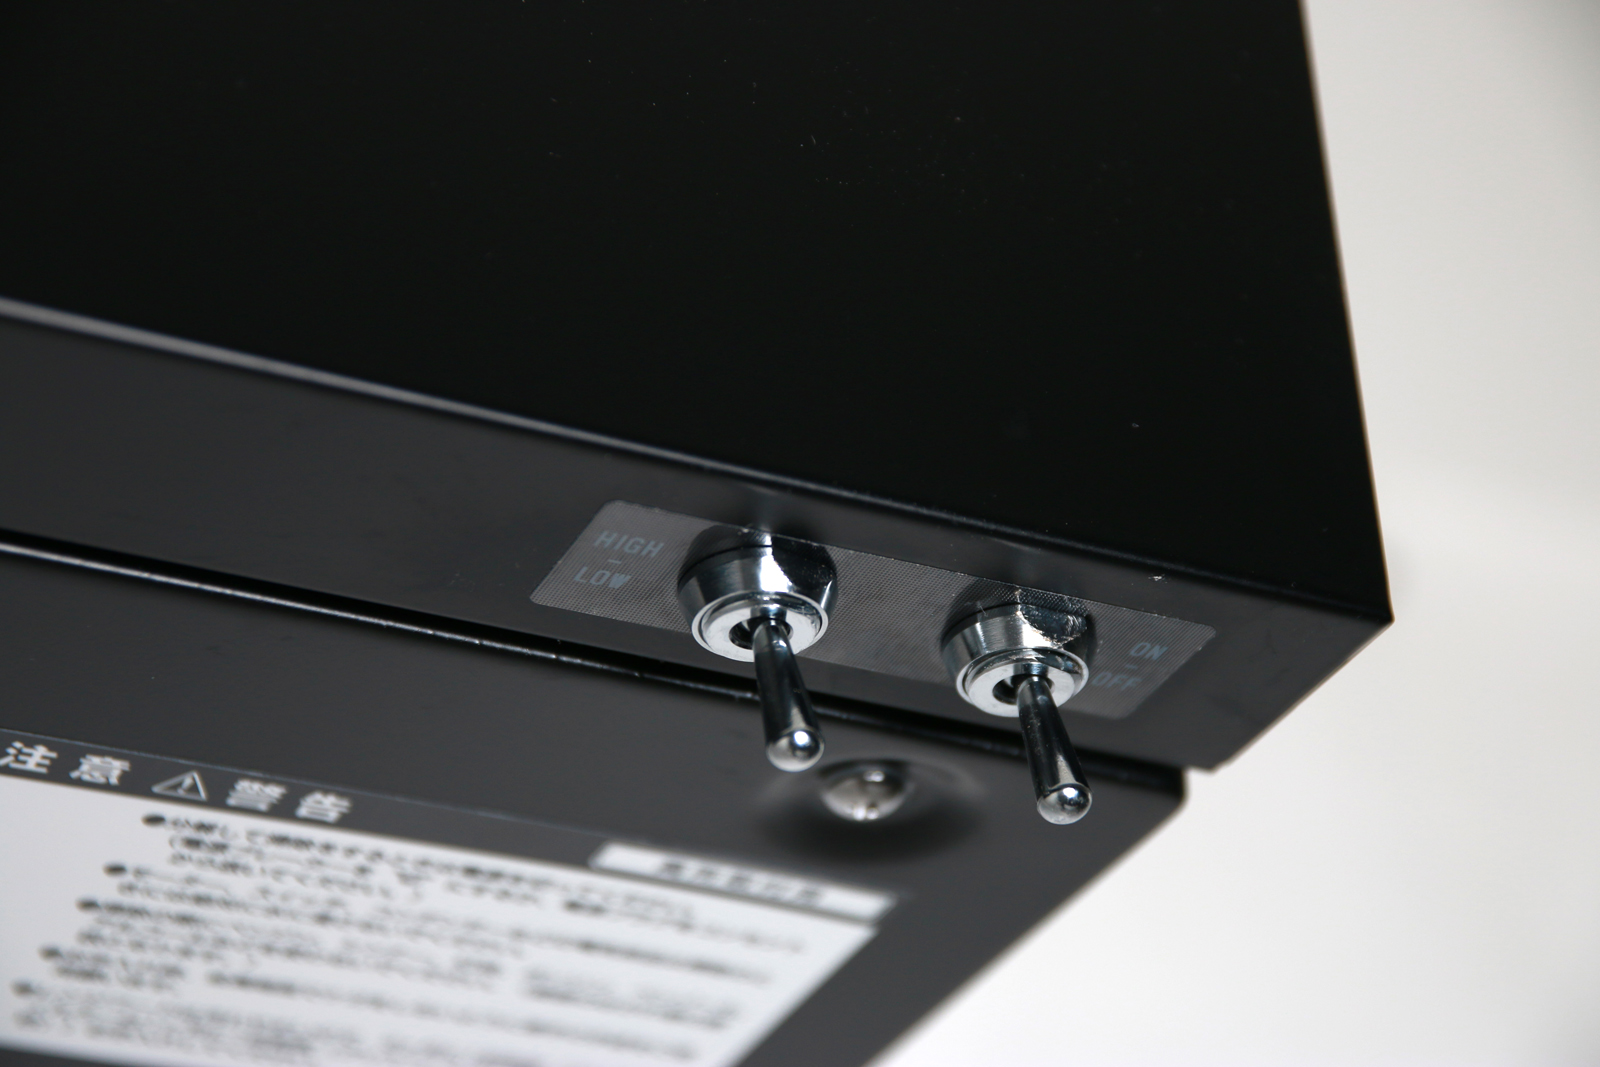 フラットレンジフード 壁付け型 W750 ブラック KB-KC017-06-G141 スイッチは側面をすっきりさせるために底面に付いたトグルスイッチ